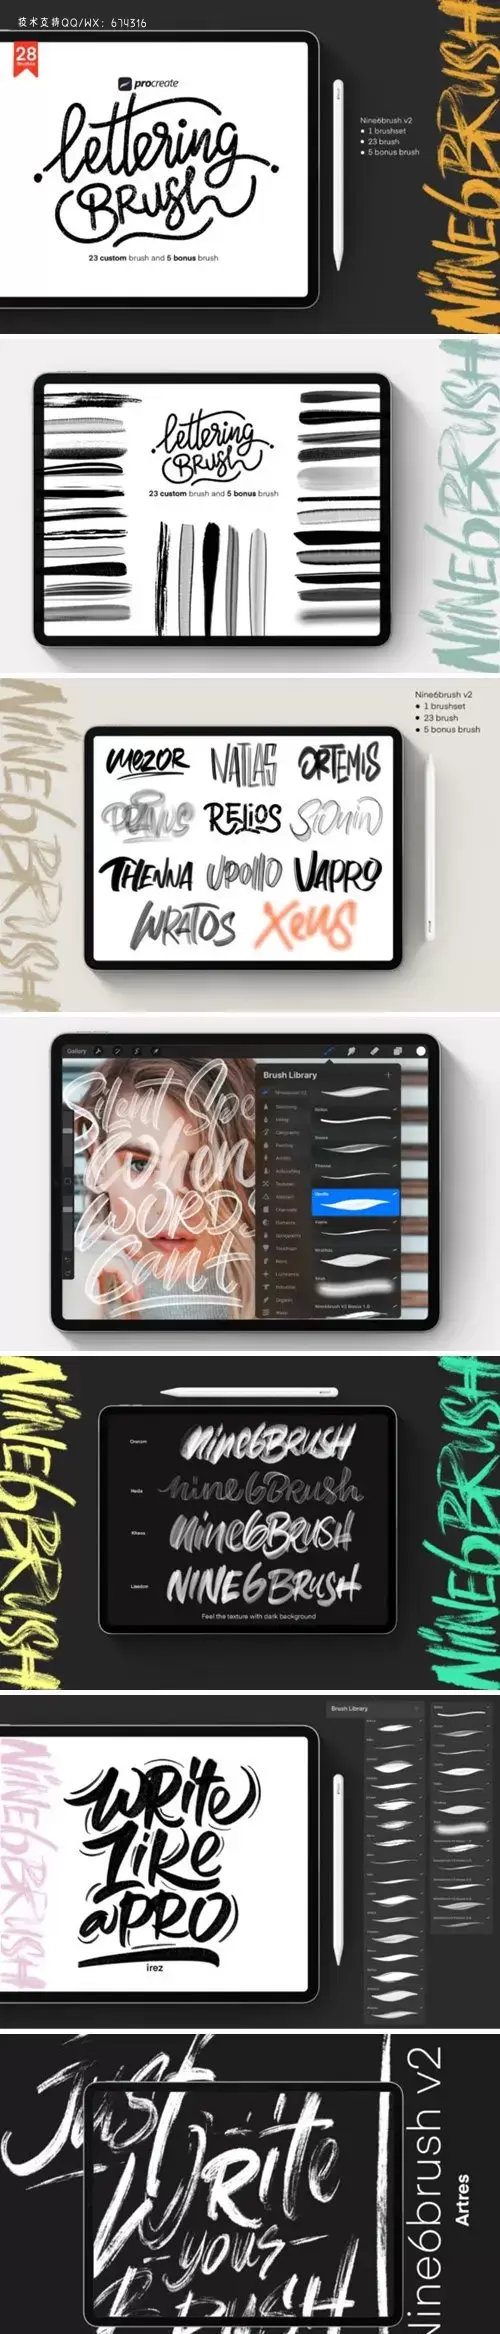 iPad专用procreate独特纹理笔刷下载插图